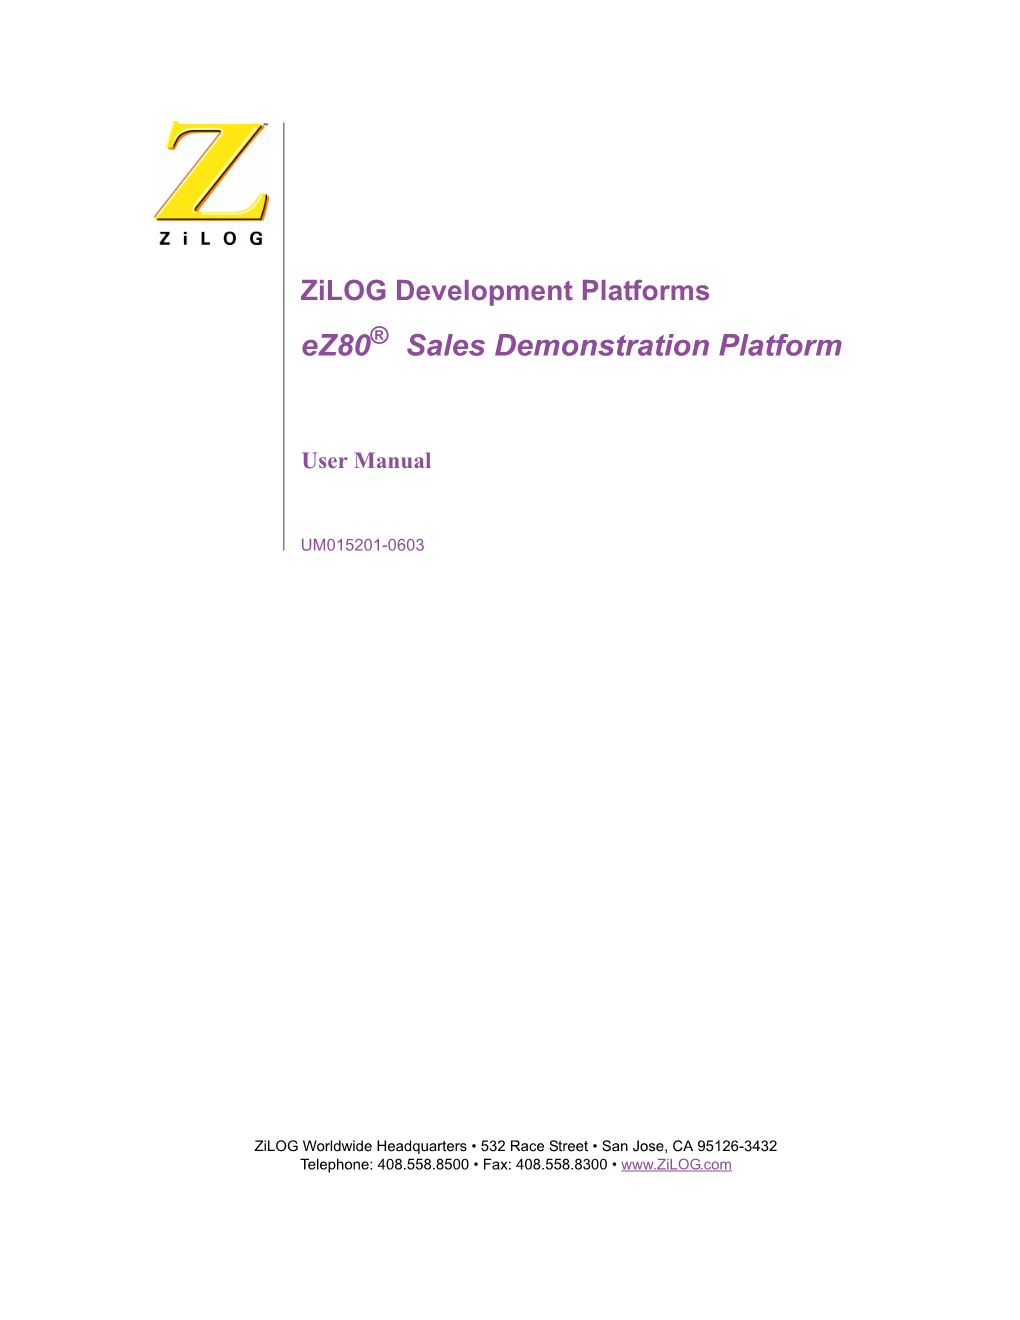 Ez80 Sales Demonstration Platform